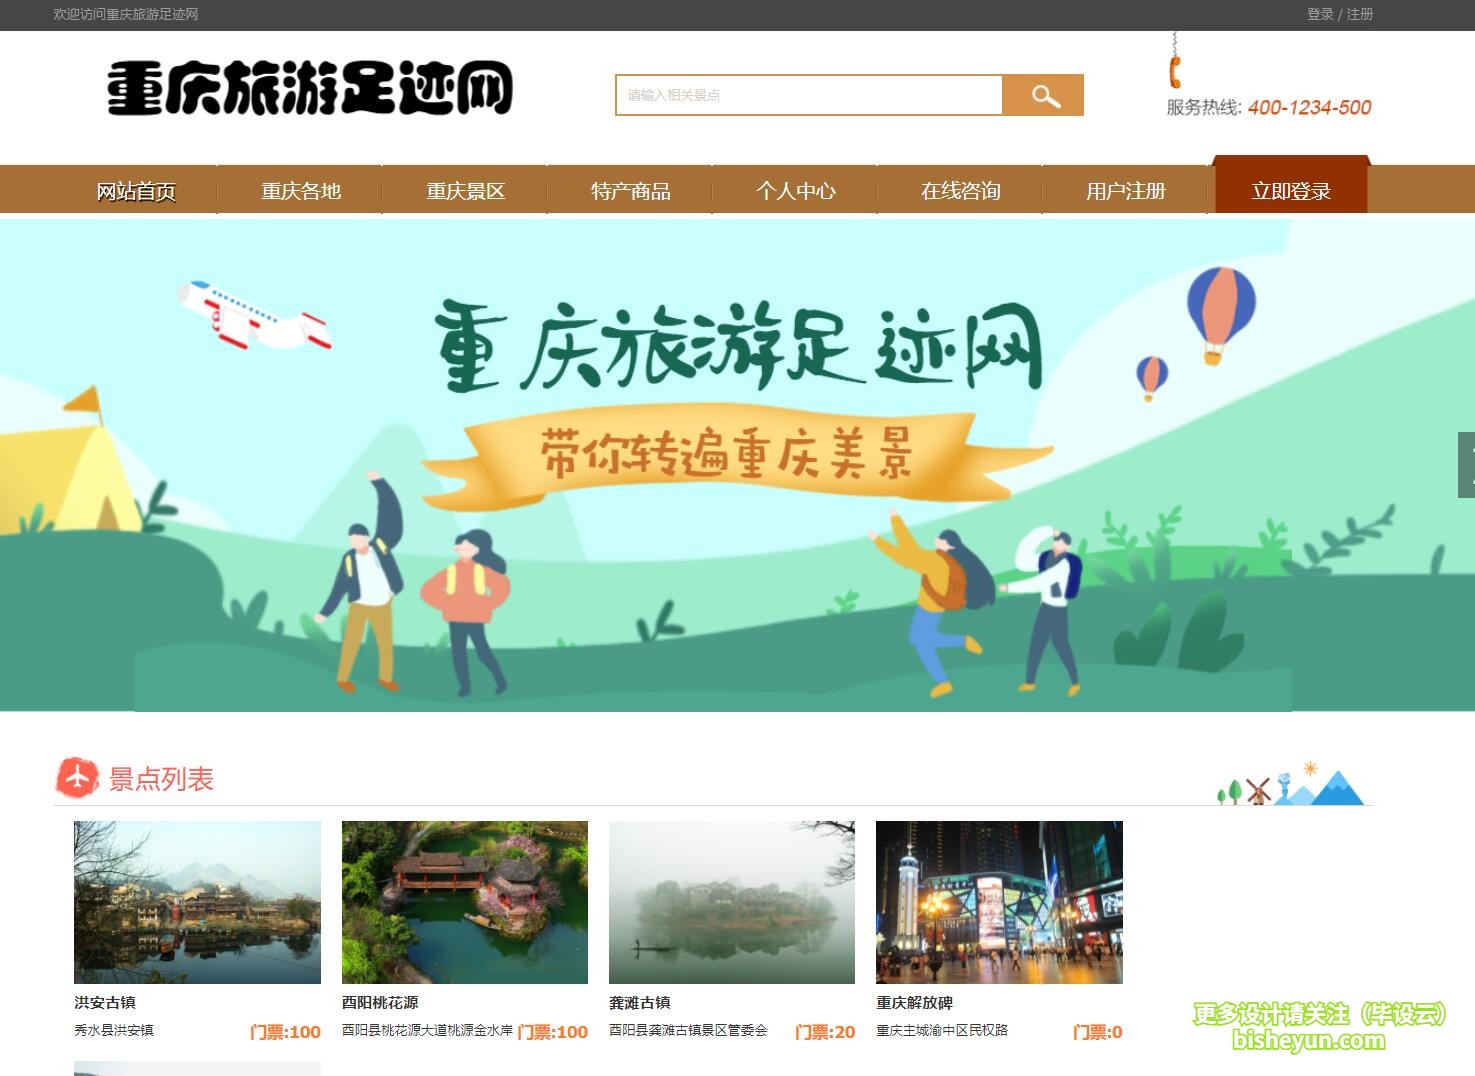 毕设云-基于php的重庆旅游网站-景点列表